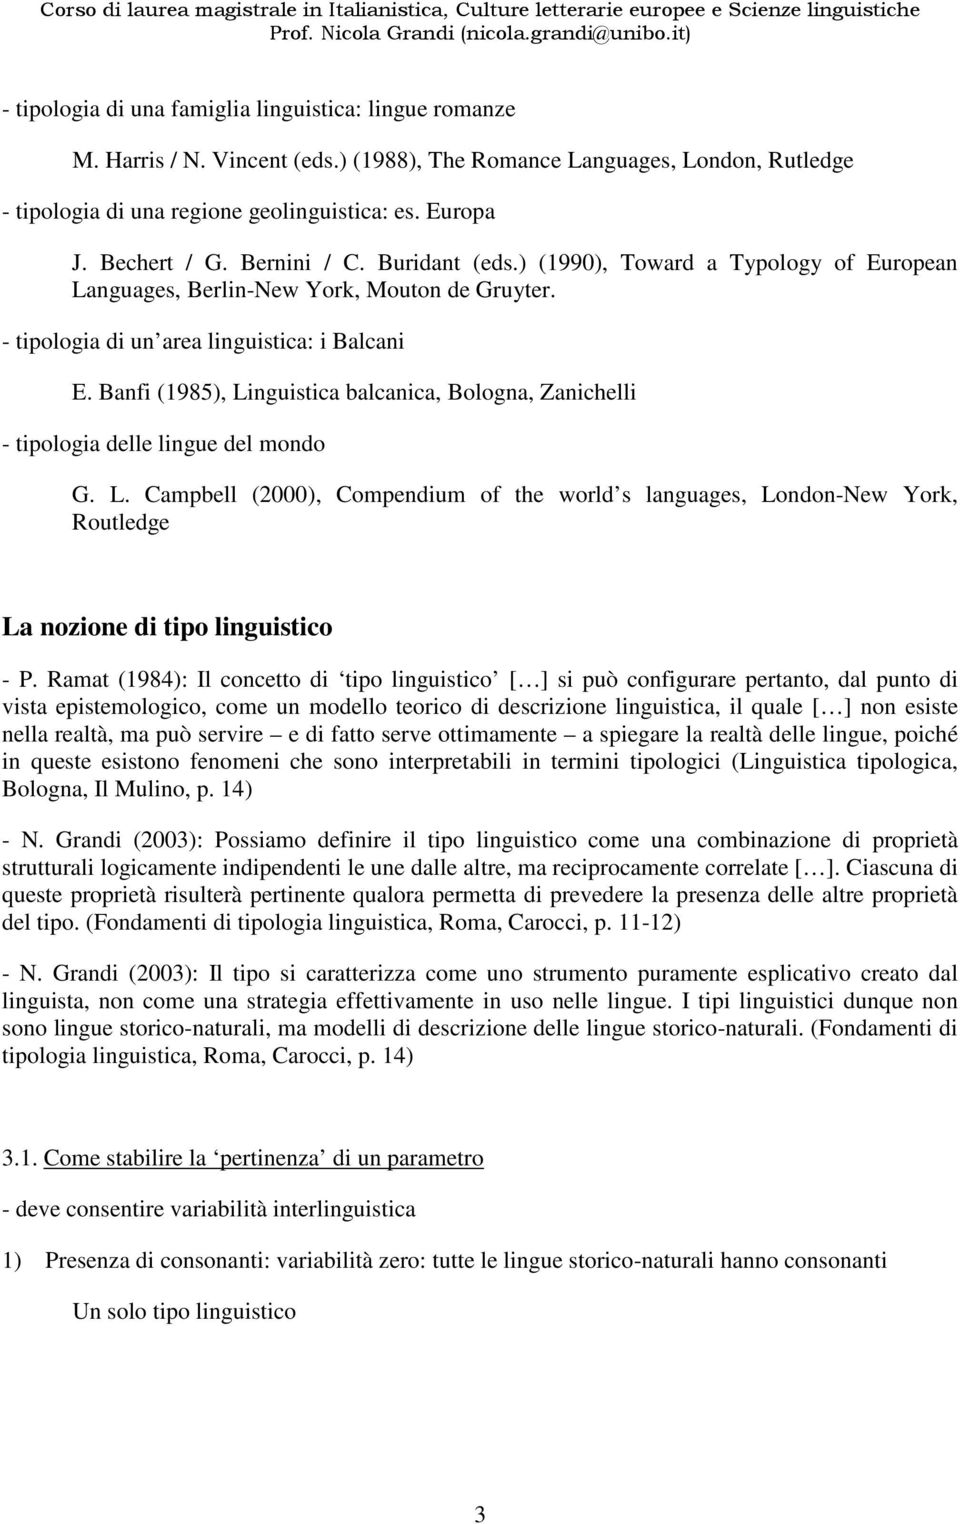 Banfi (1985), Linguistica balcanica, Bologna, Zanichelli - tipologia delle lingue del mondo G. L. Campbell (2000), Compendium of the world s languages, London-New York, Routledge La nozione di tipo linguistico - P.